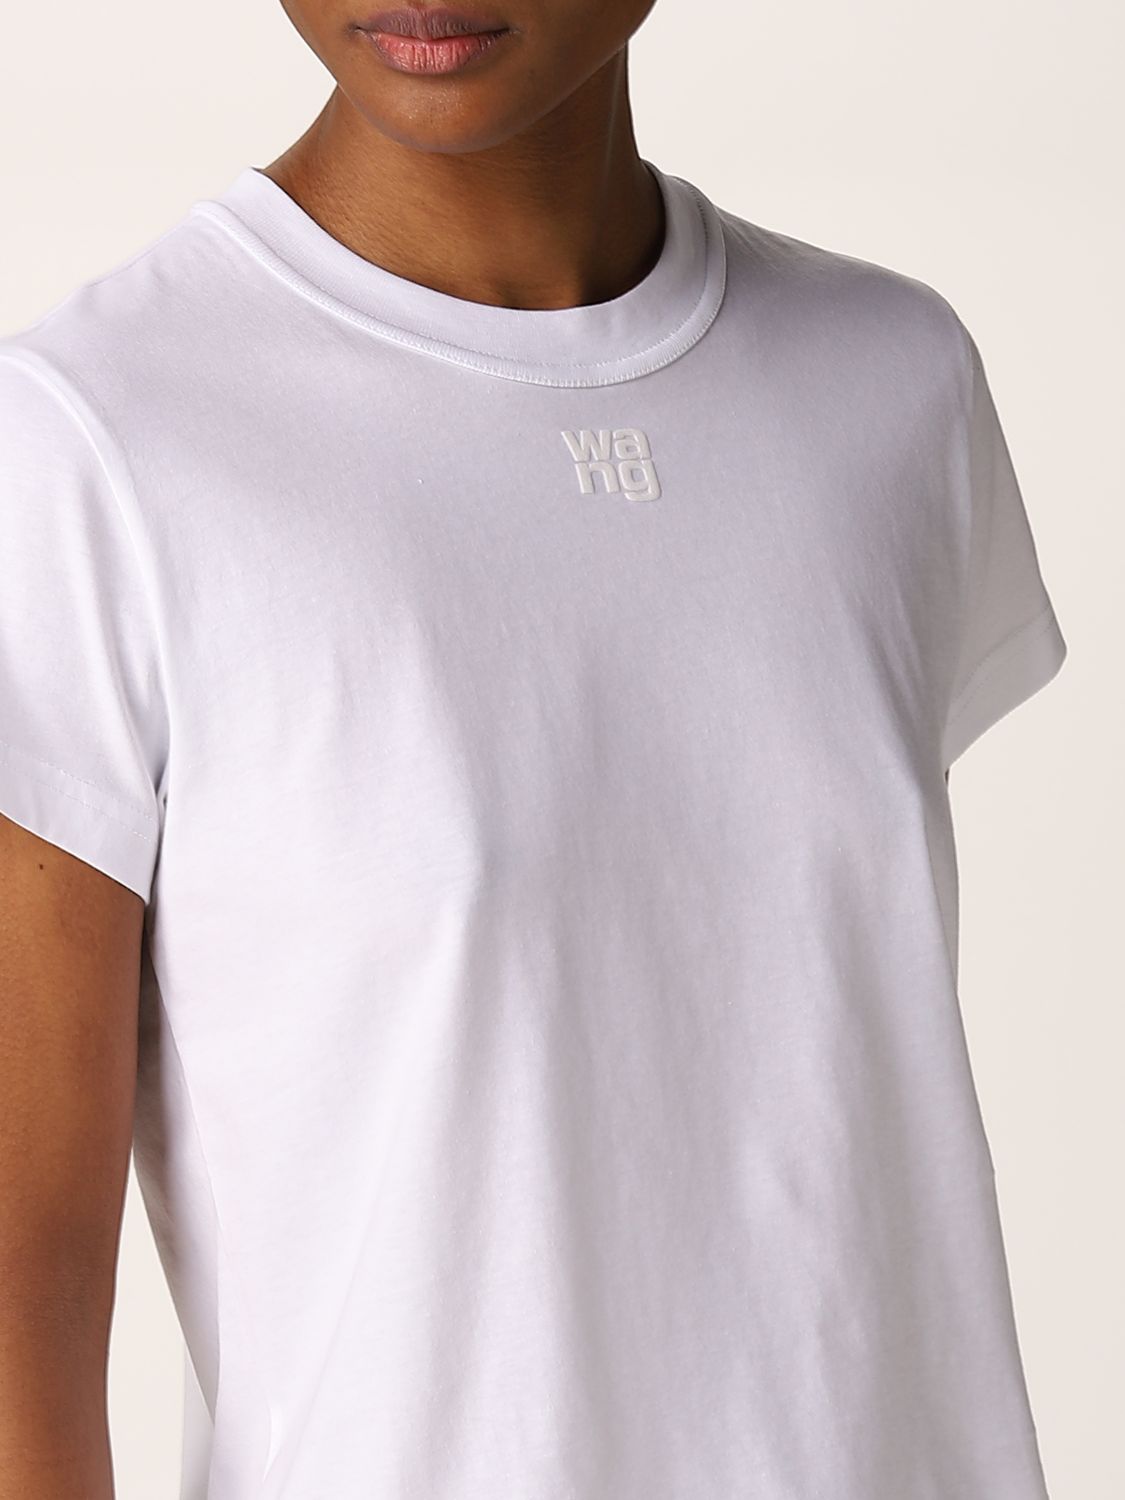 ALEXANDER WANG: basic logo t-shirt - White | Alexander Wang t-shirt  4CC3211282 online at